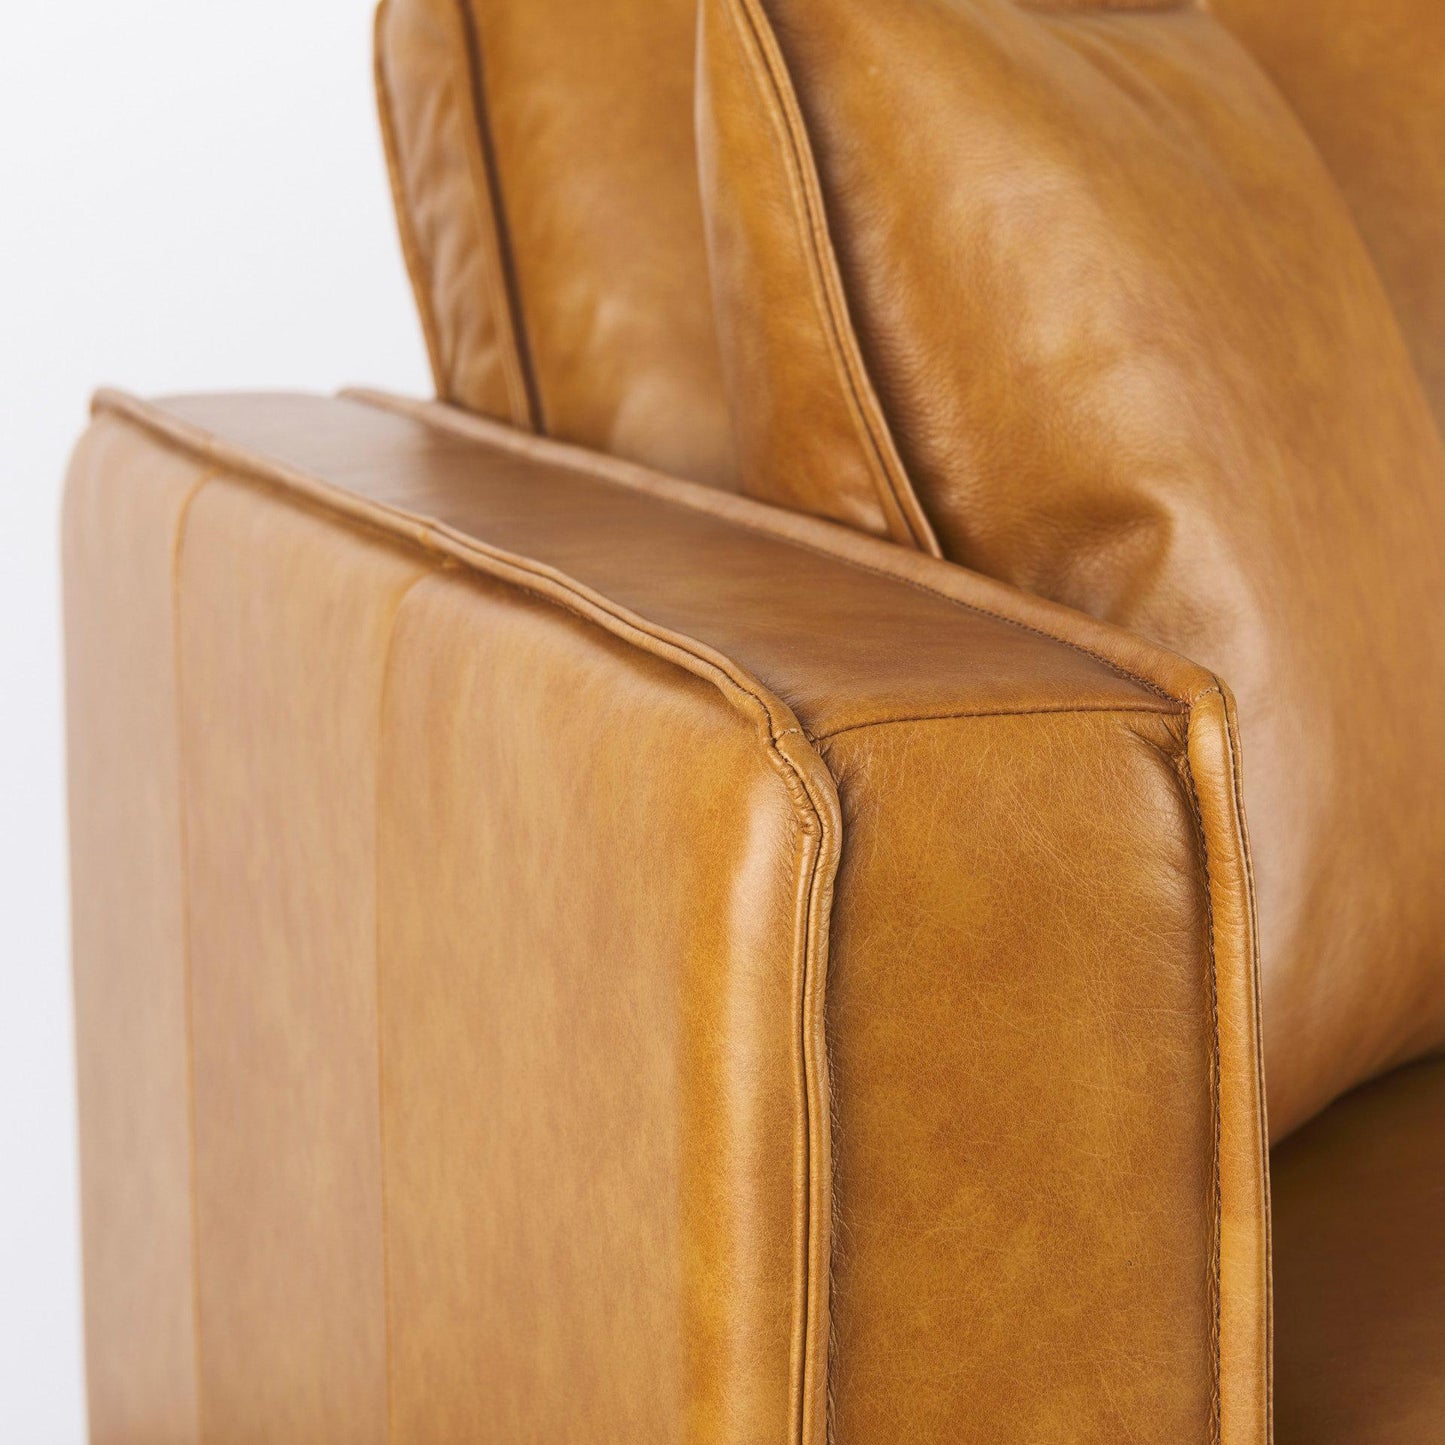 D'Arcy 65.0L x 37.0W x 34.0H Tan Leather Love Seat